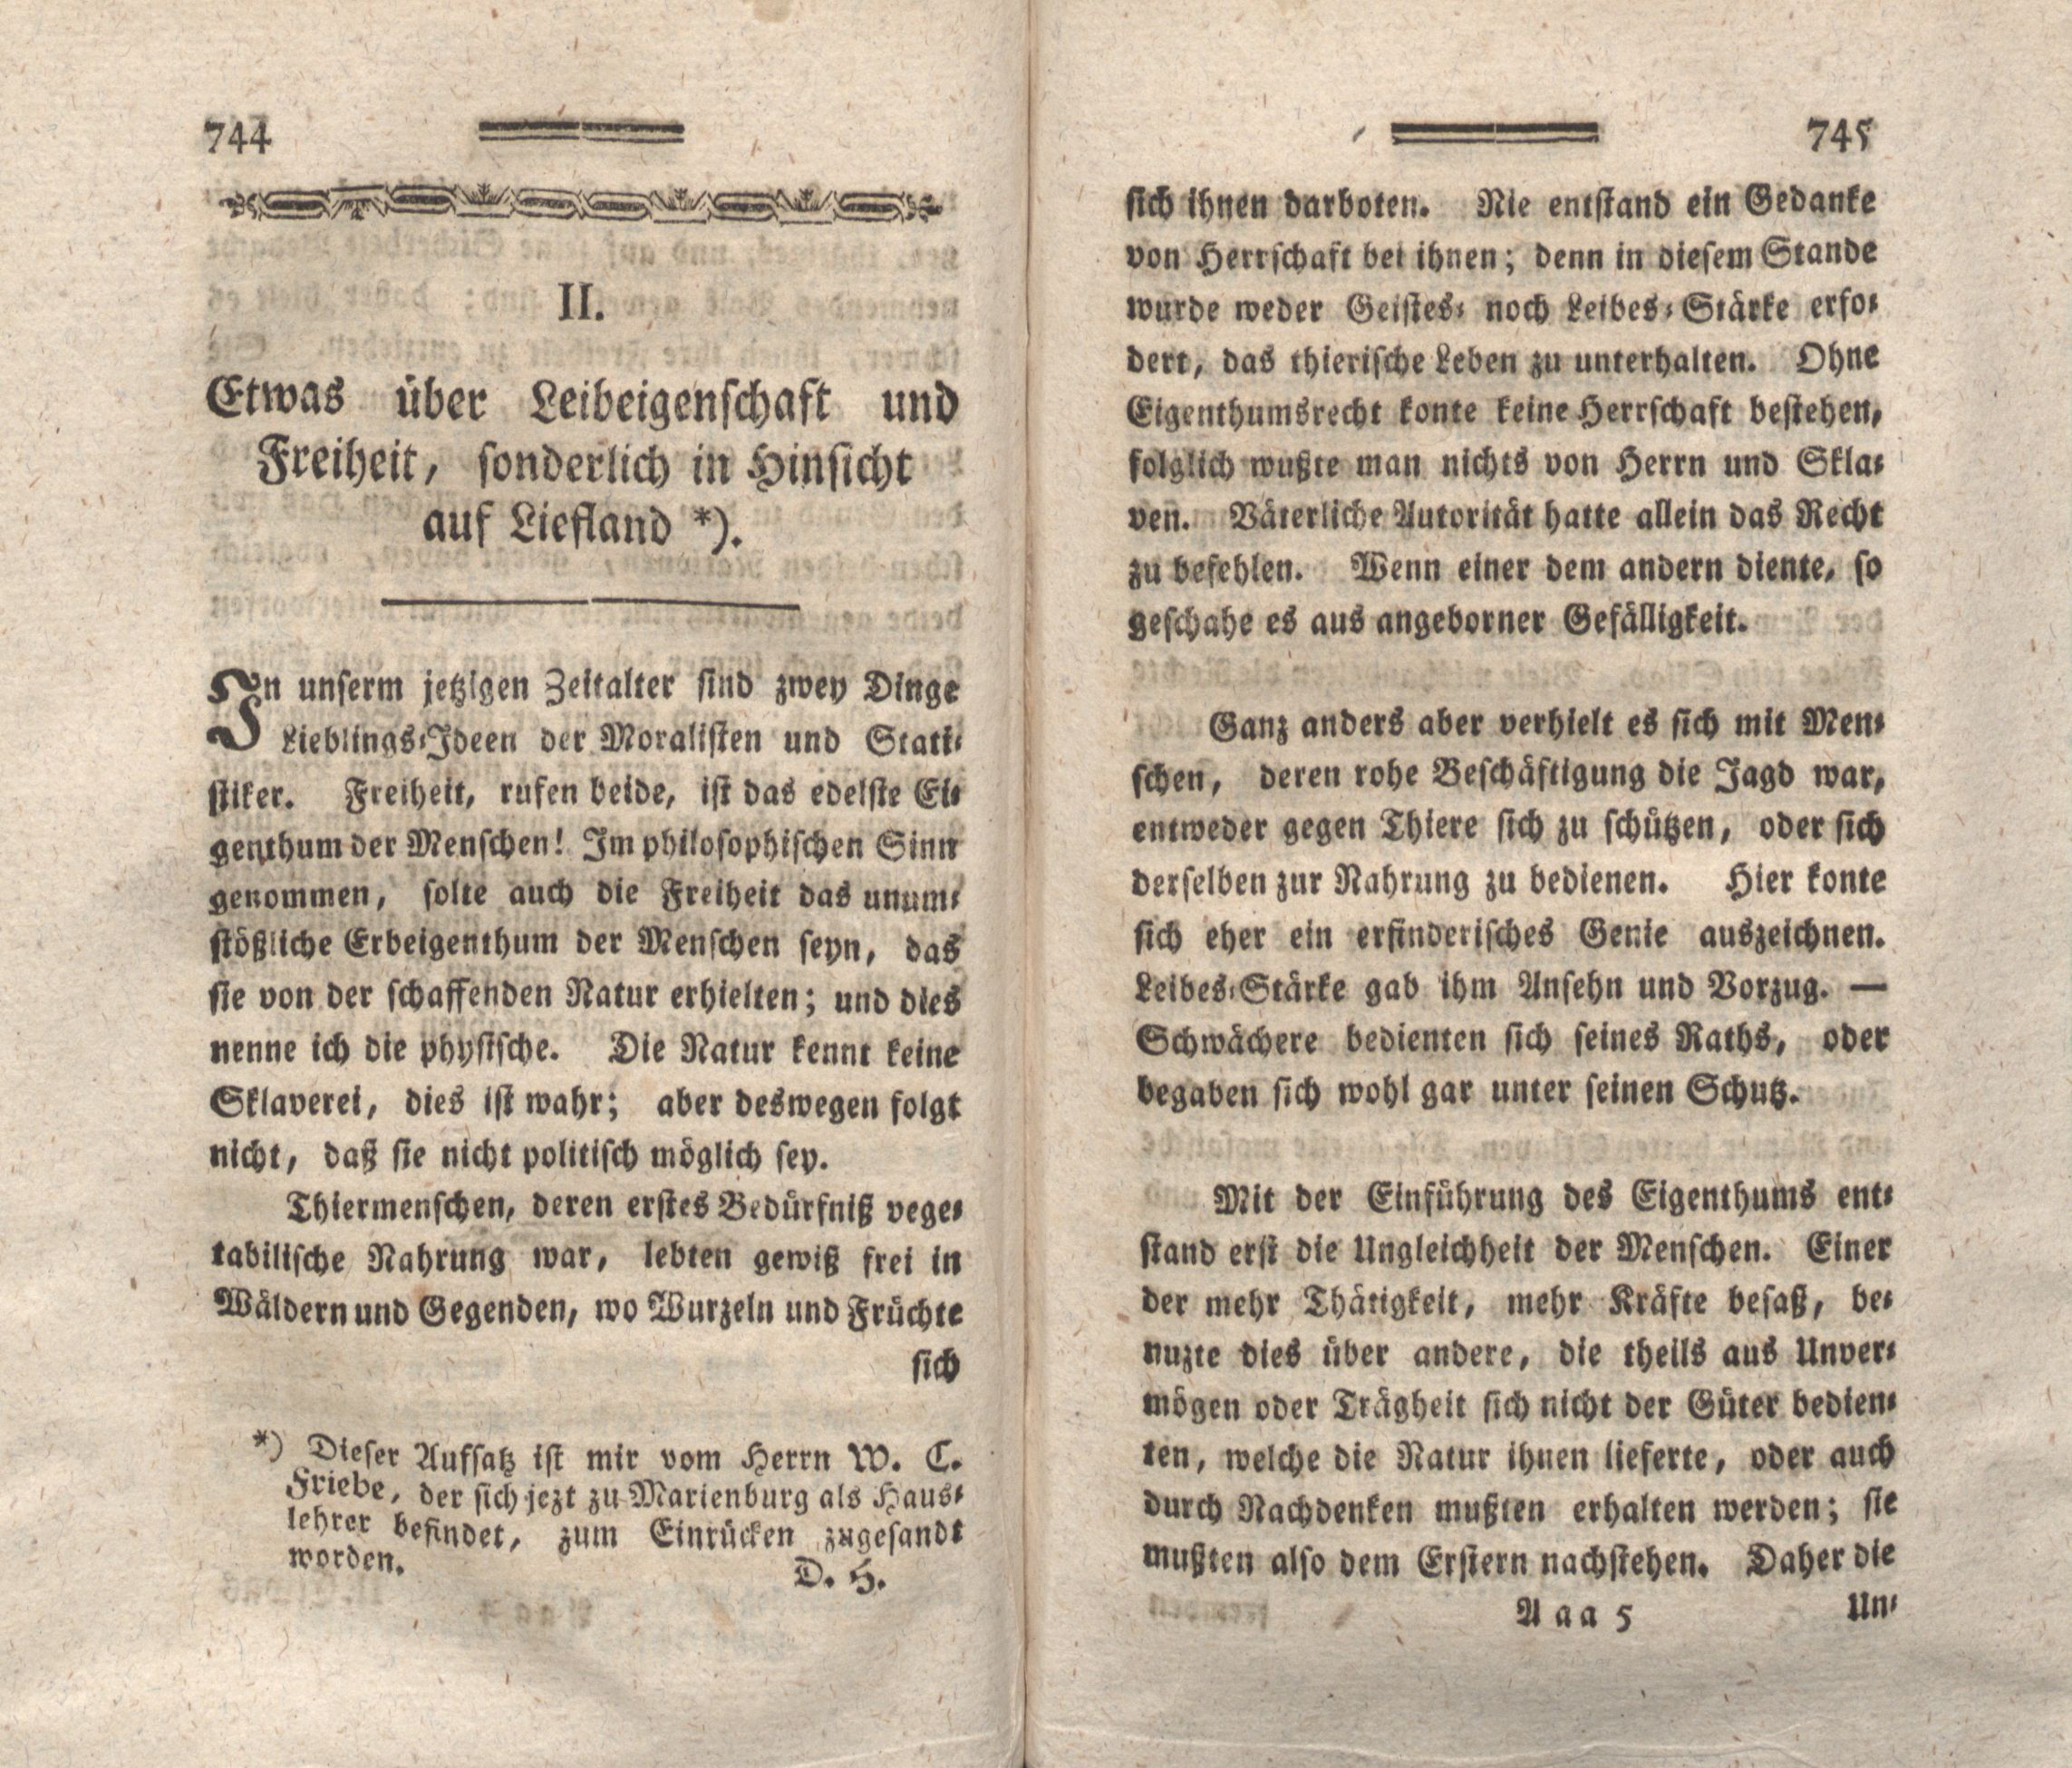 Etwas über Leibeigenschaft und Freiheit, sonderlich in Hinsicht auf Liefland (1788) | 1. (744-745) Main body of text